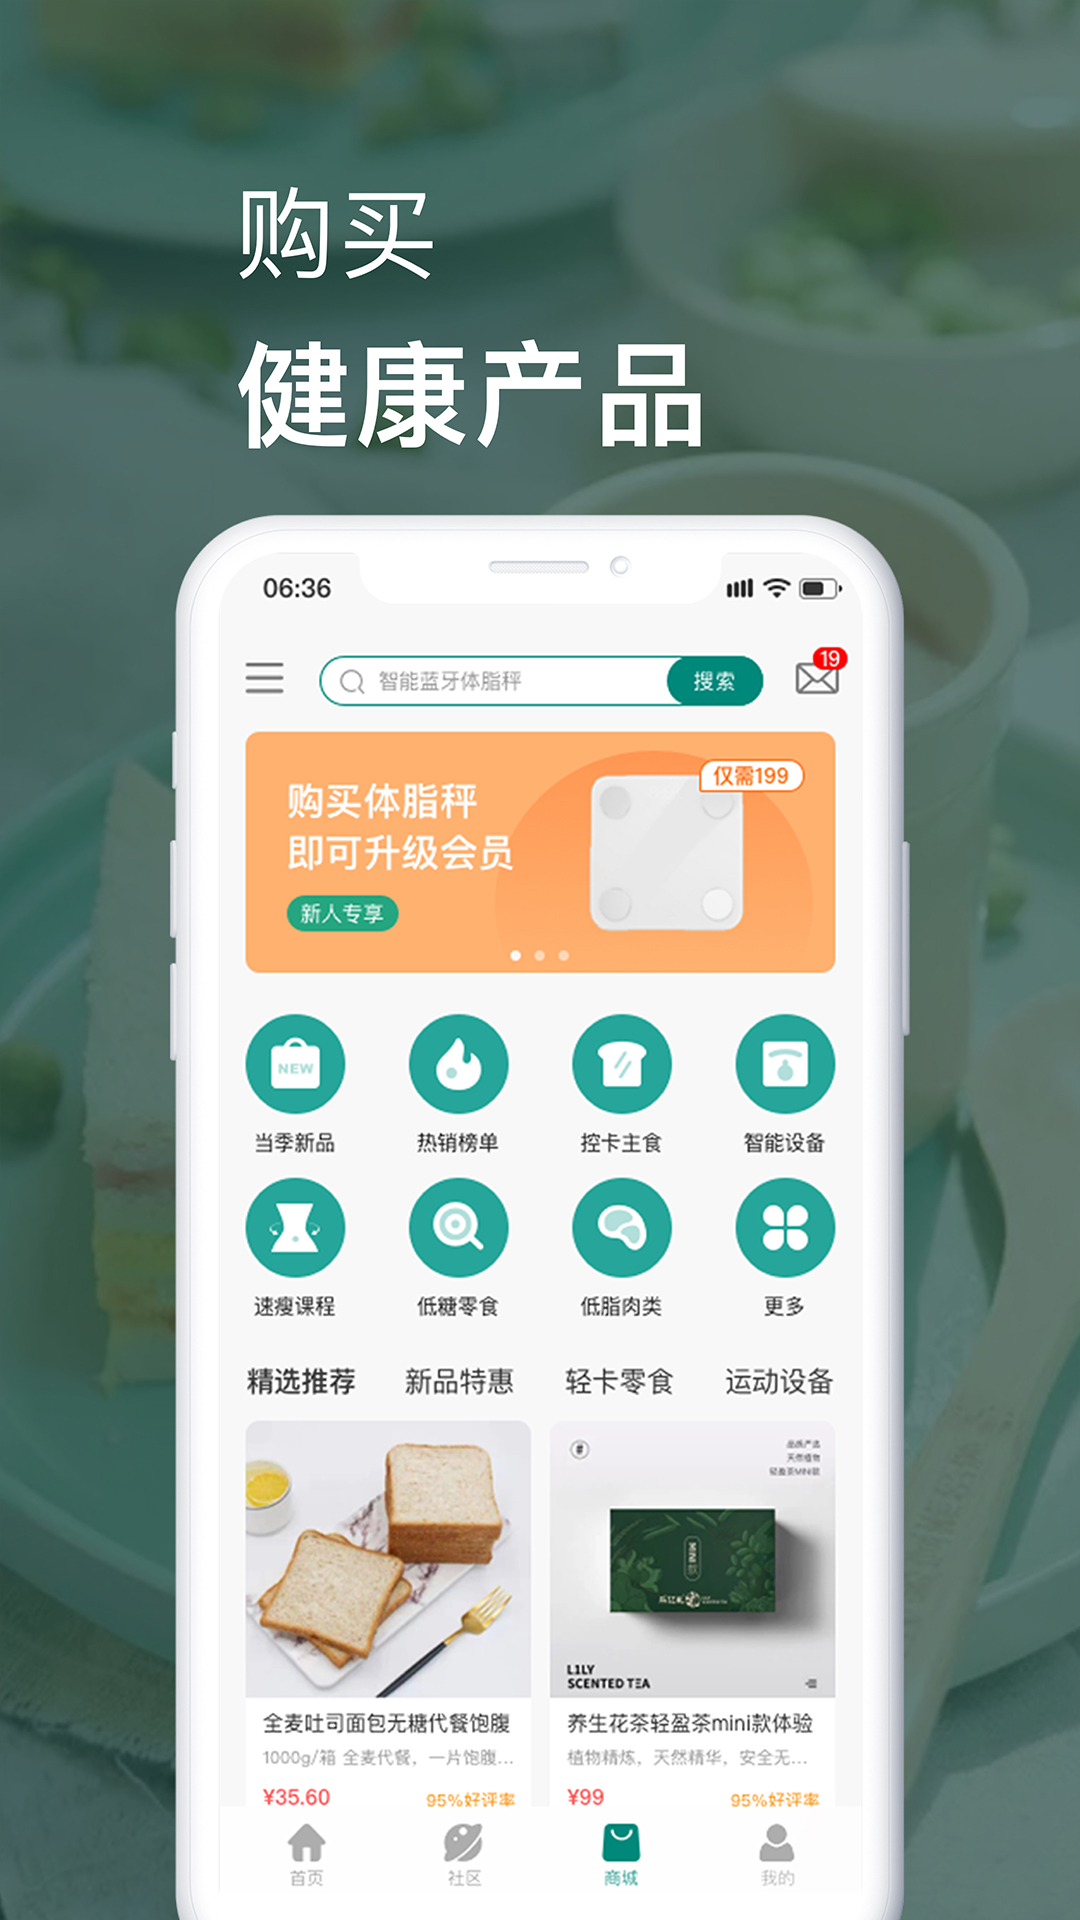 乐亿礼app1.7.0